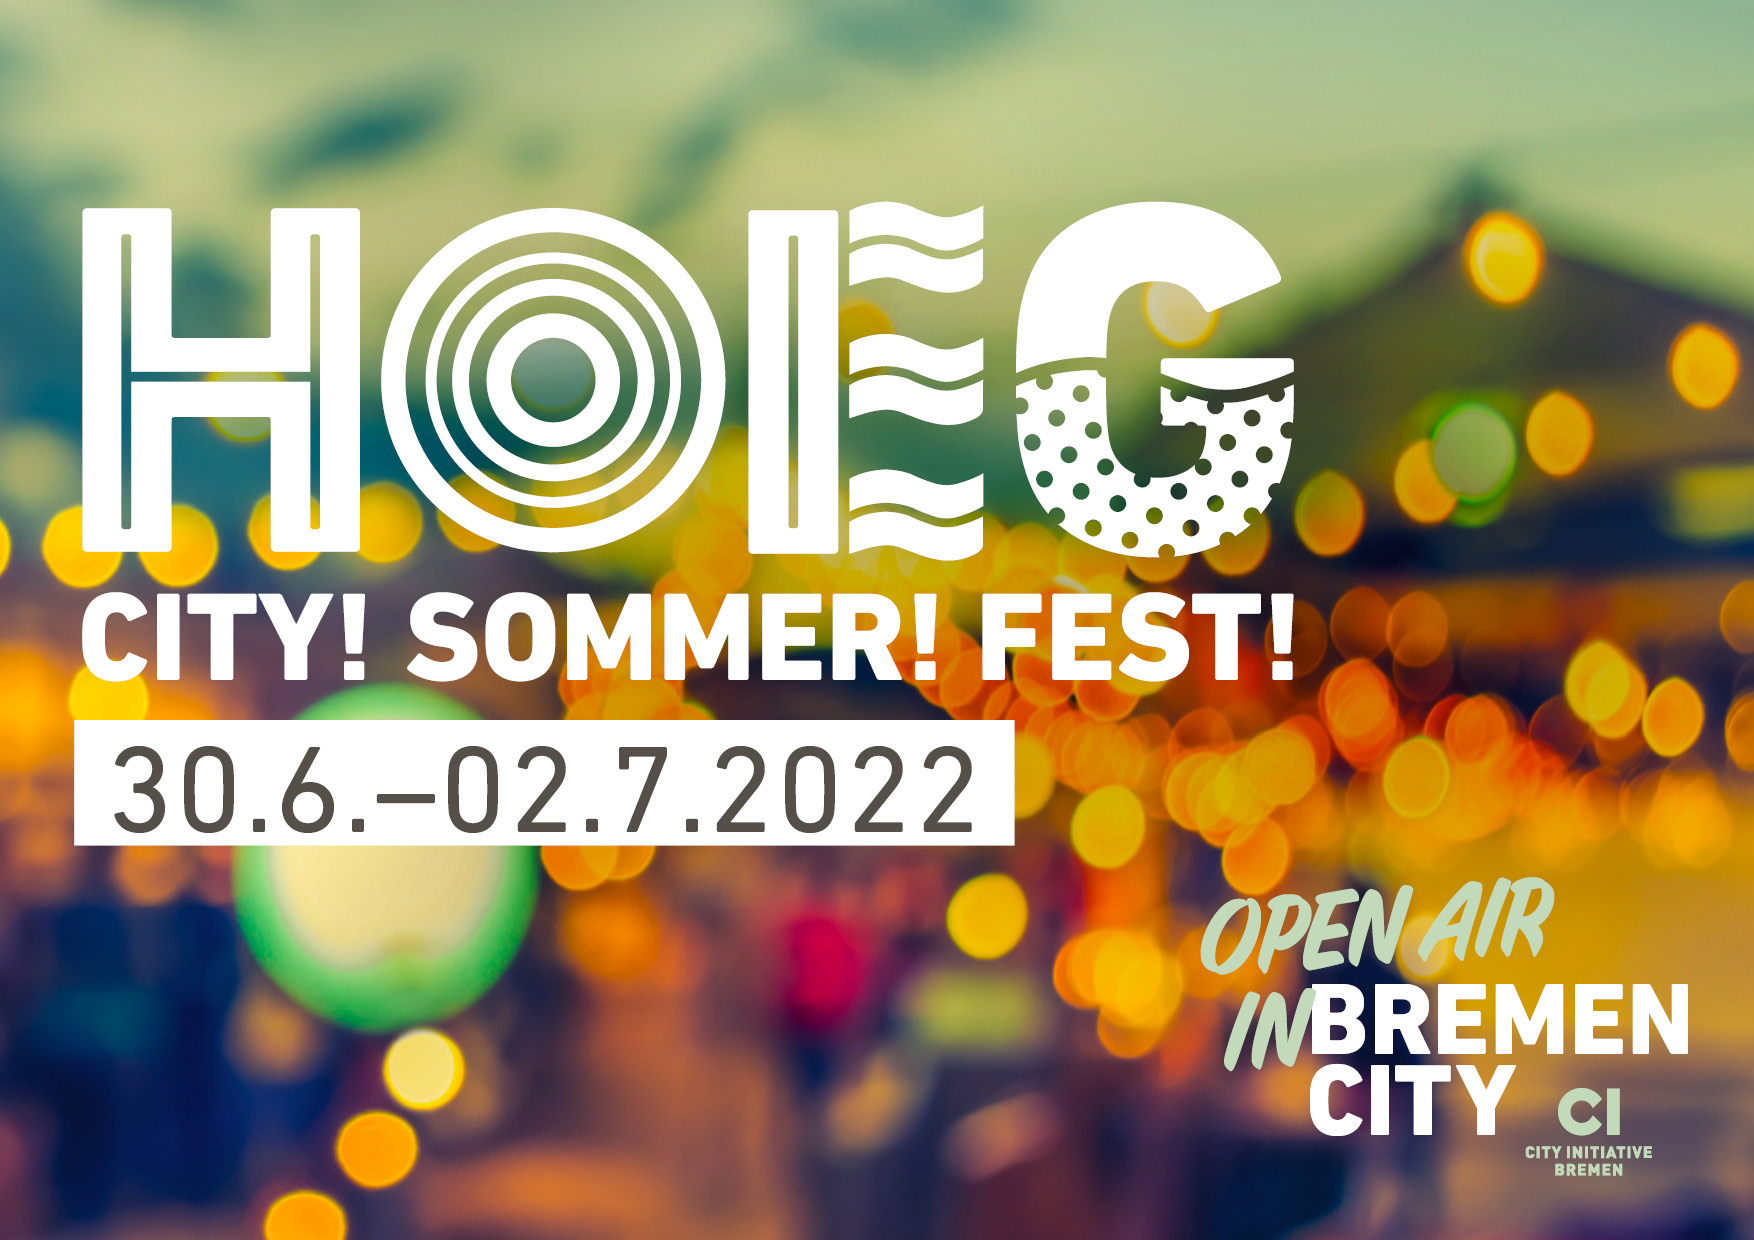 "SONGS & WHISPERS" @ Hoeg City! Sommer! Fest!